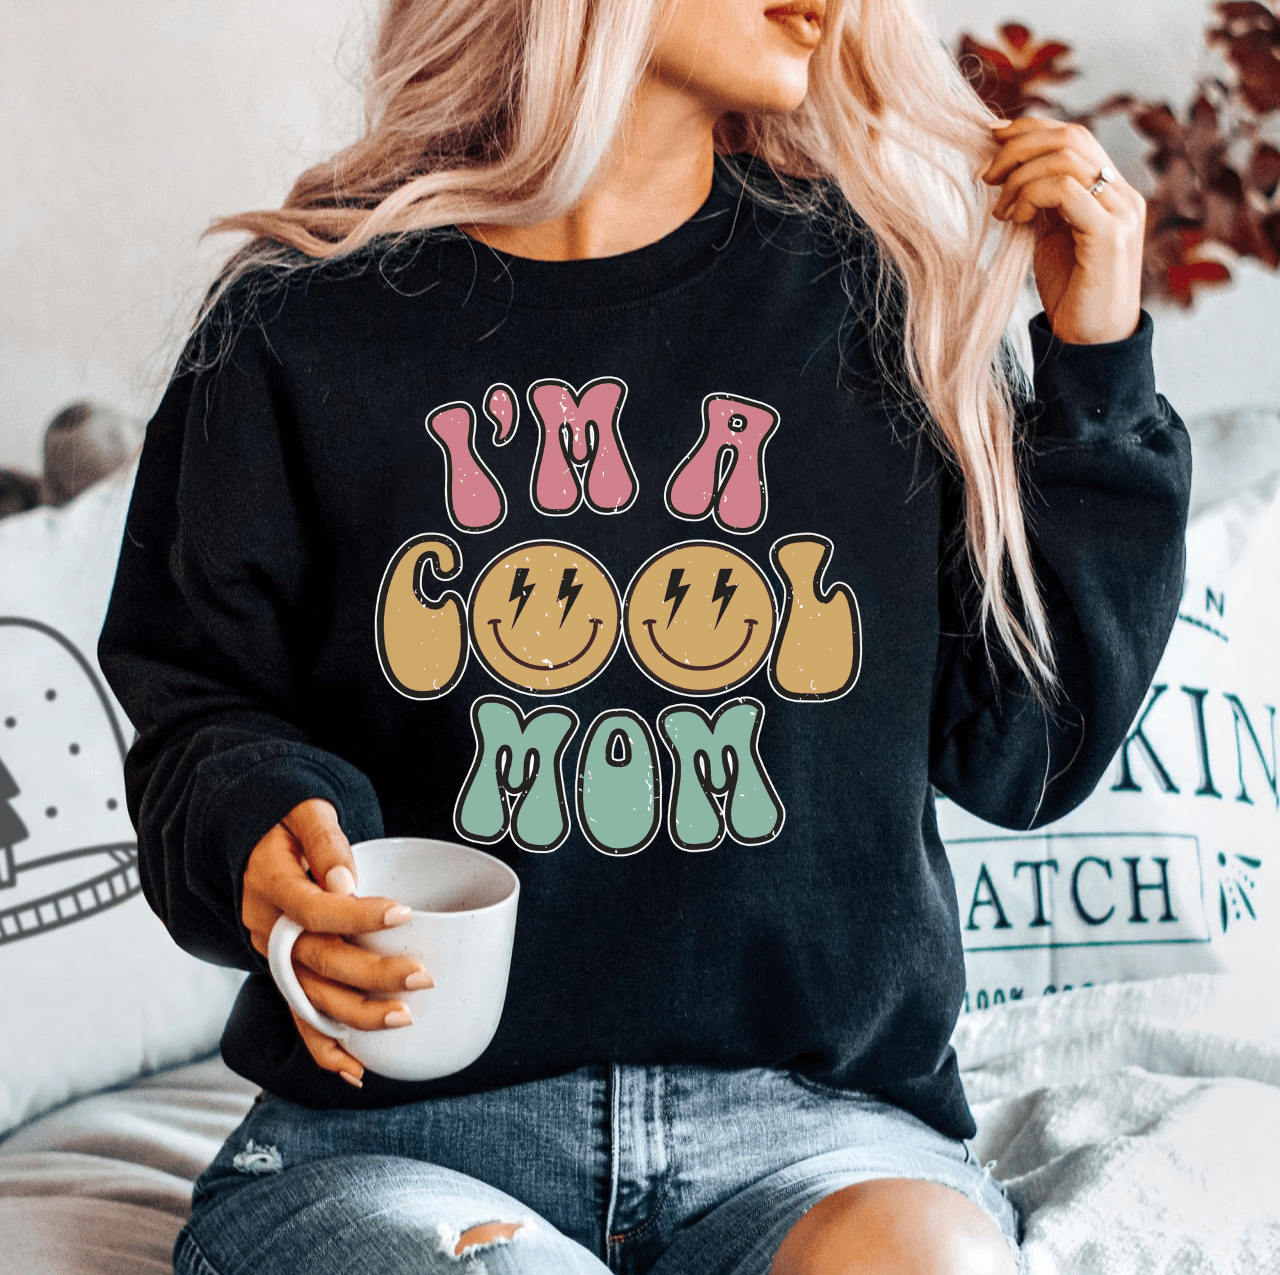 Coole Mama" Sweatshirt - Geschenk zum Muttertag - GiftHaus